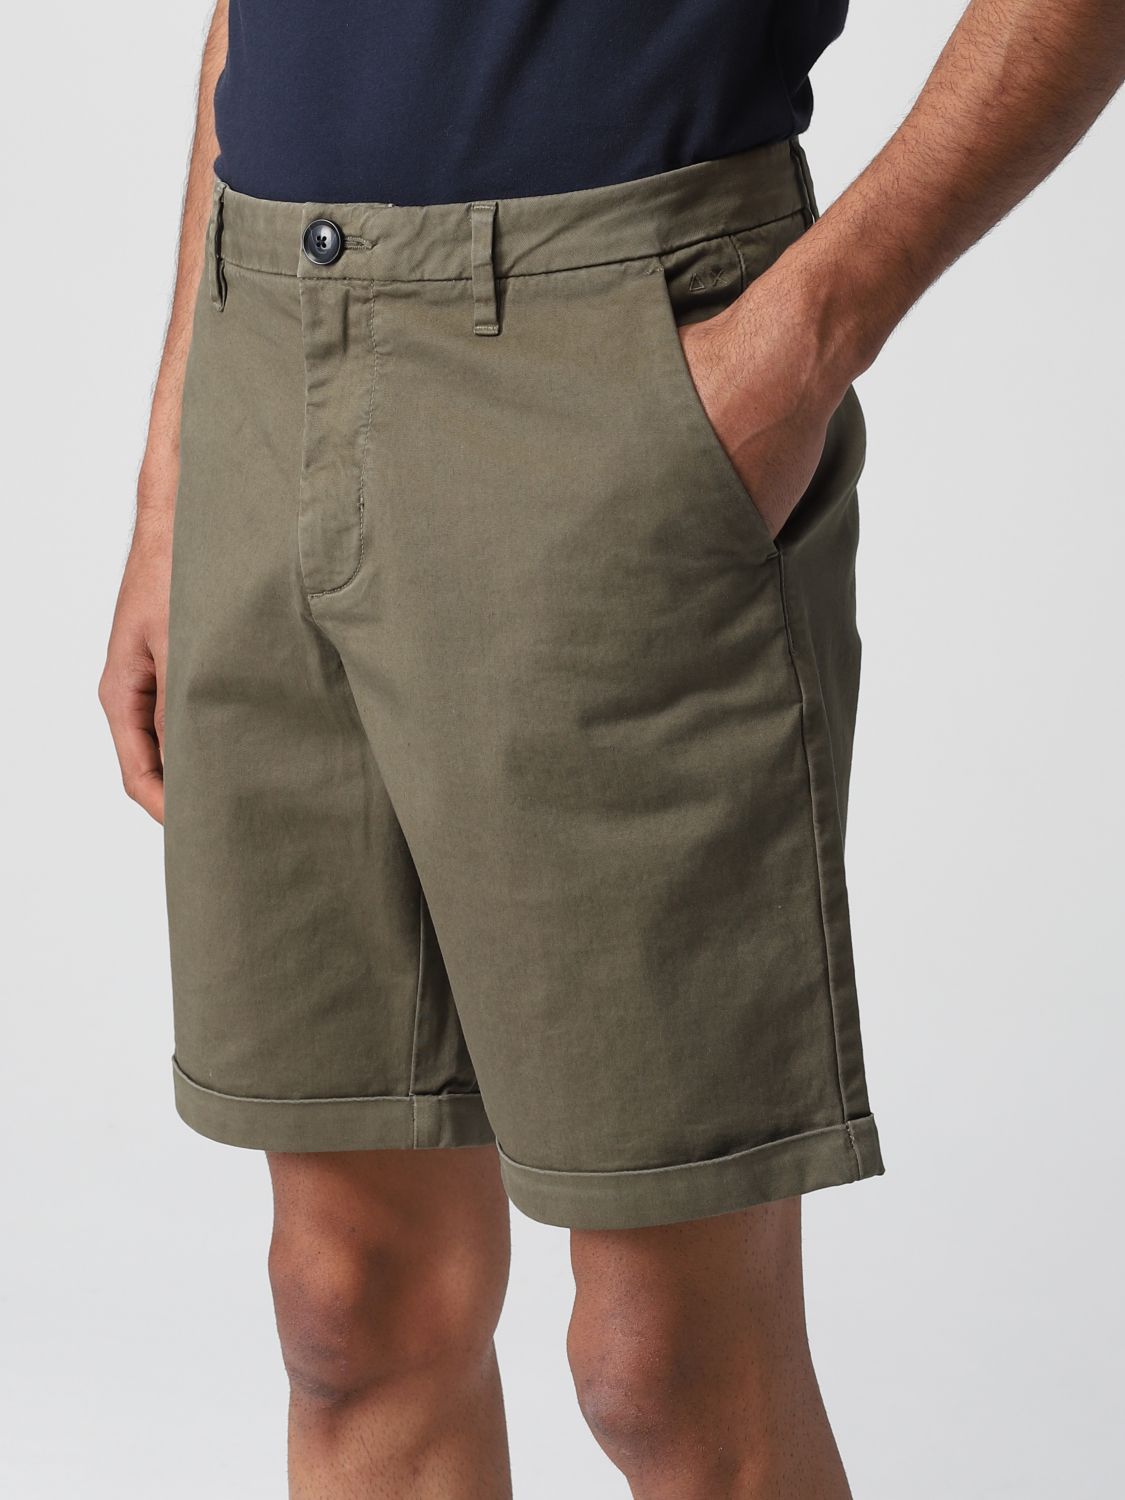 Pantalones cortos Sun 68: Pantalones cortos Sun 68 para hombre militar 3